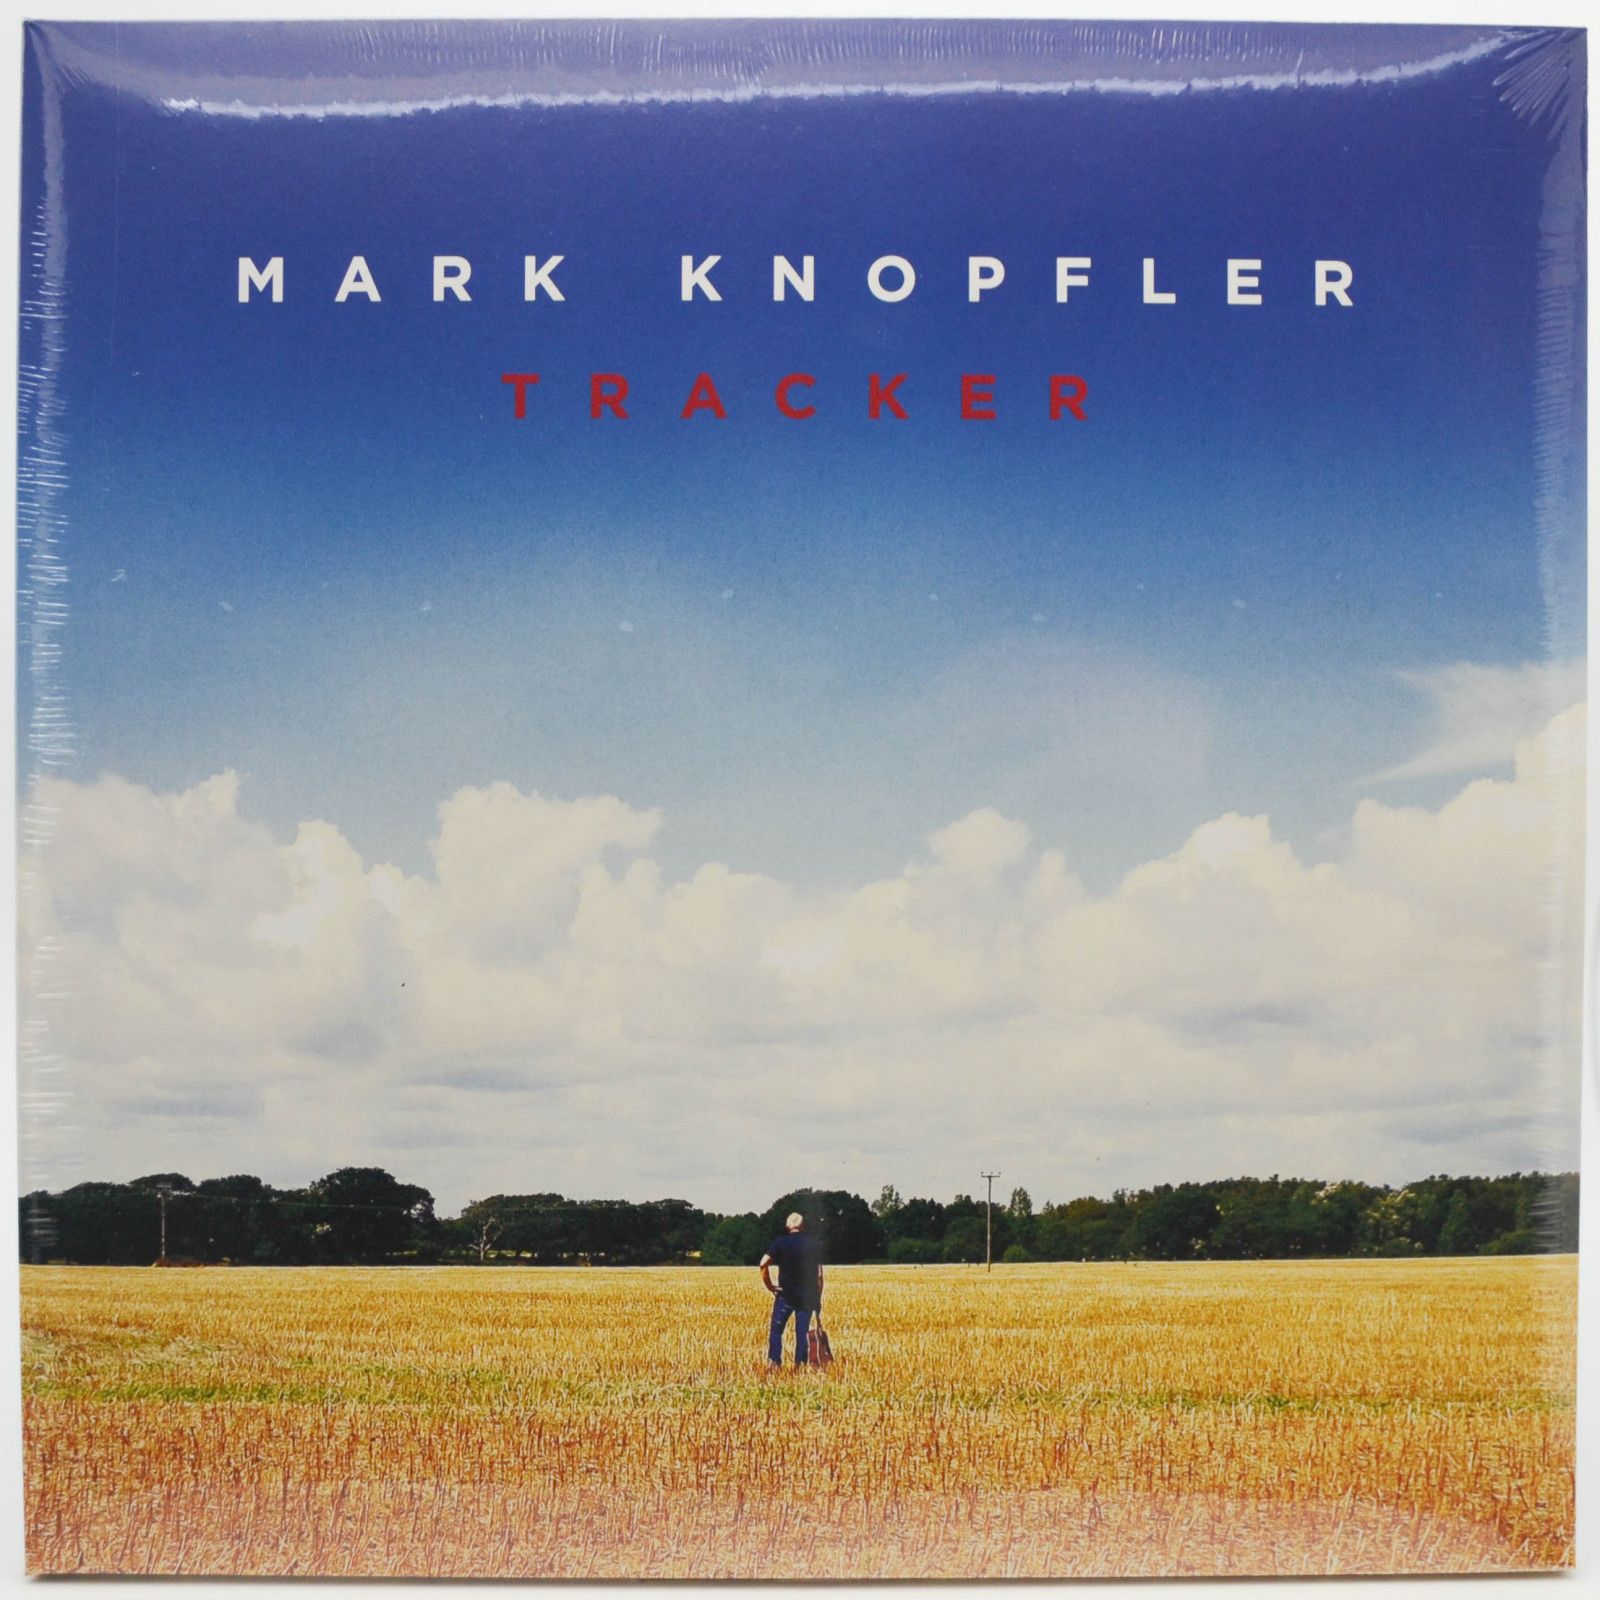 Mark Knopfler — Tracker (2LP), 2015